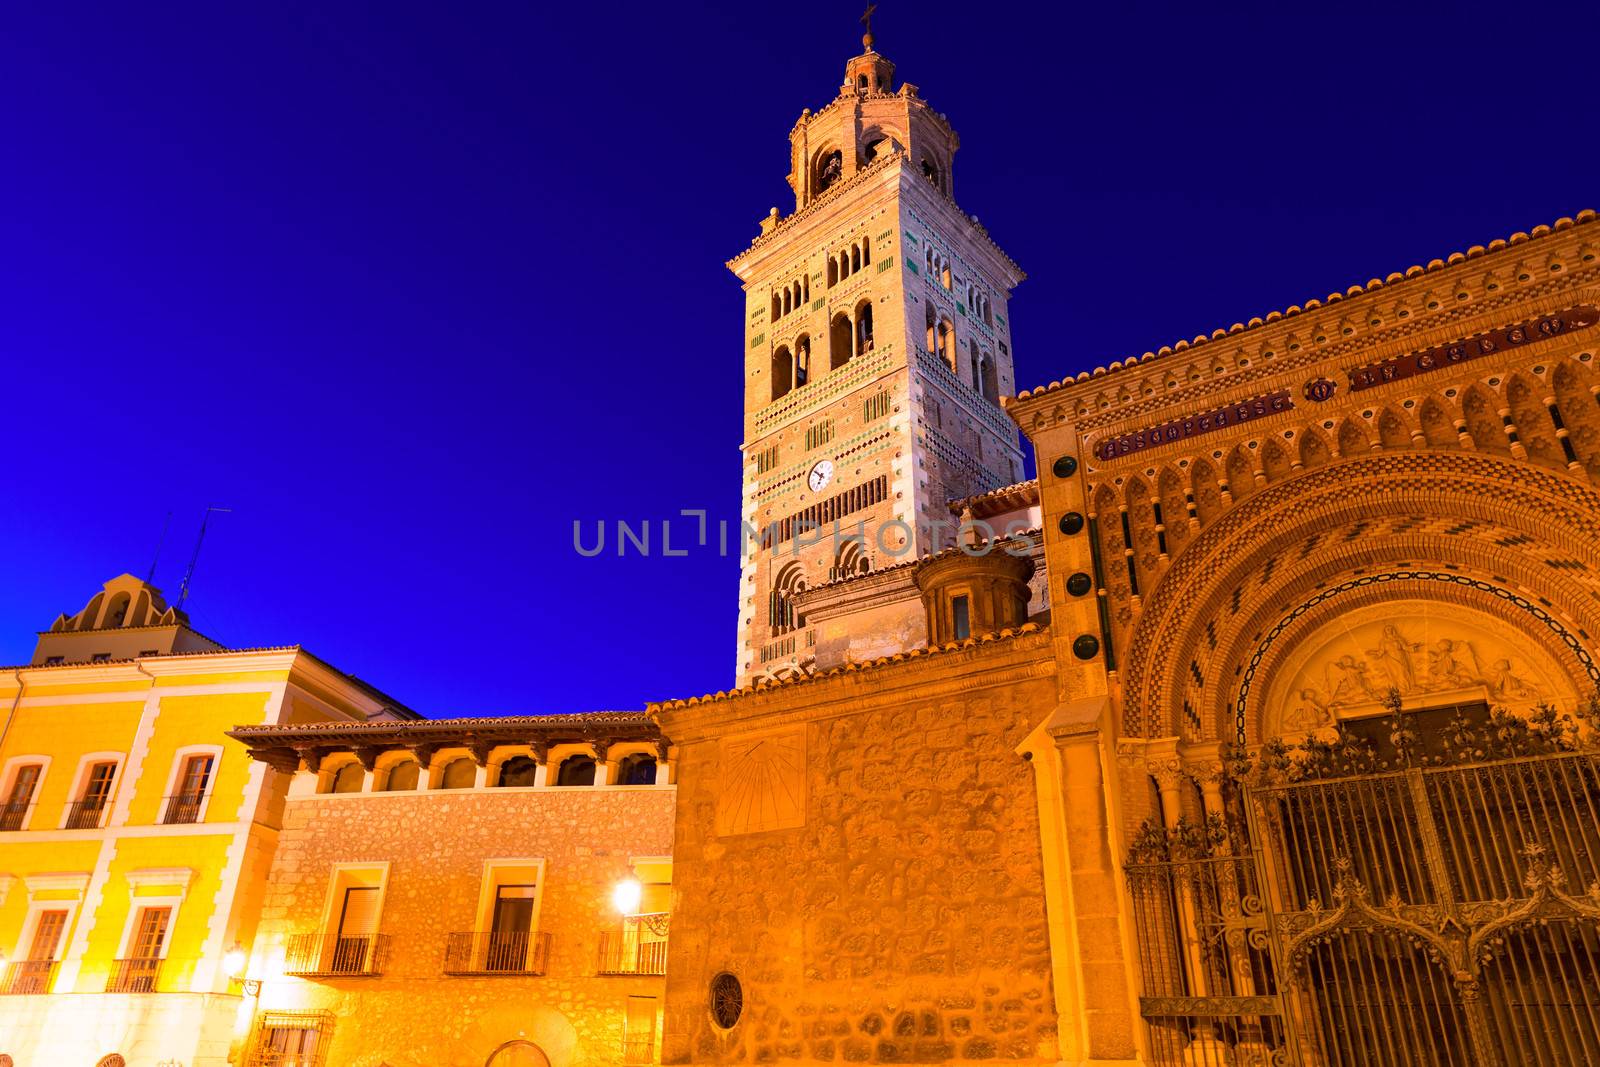 Aragon Teruel Cathedral Mudejar Santa Maria Mediavilla Unesco heritage in Spain